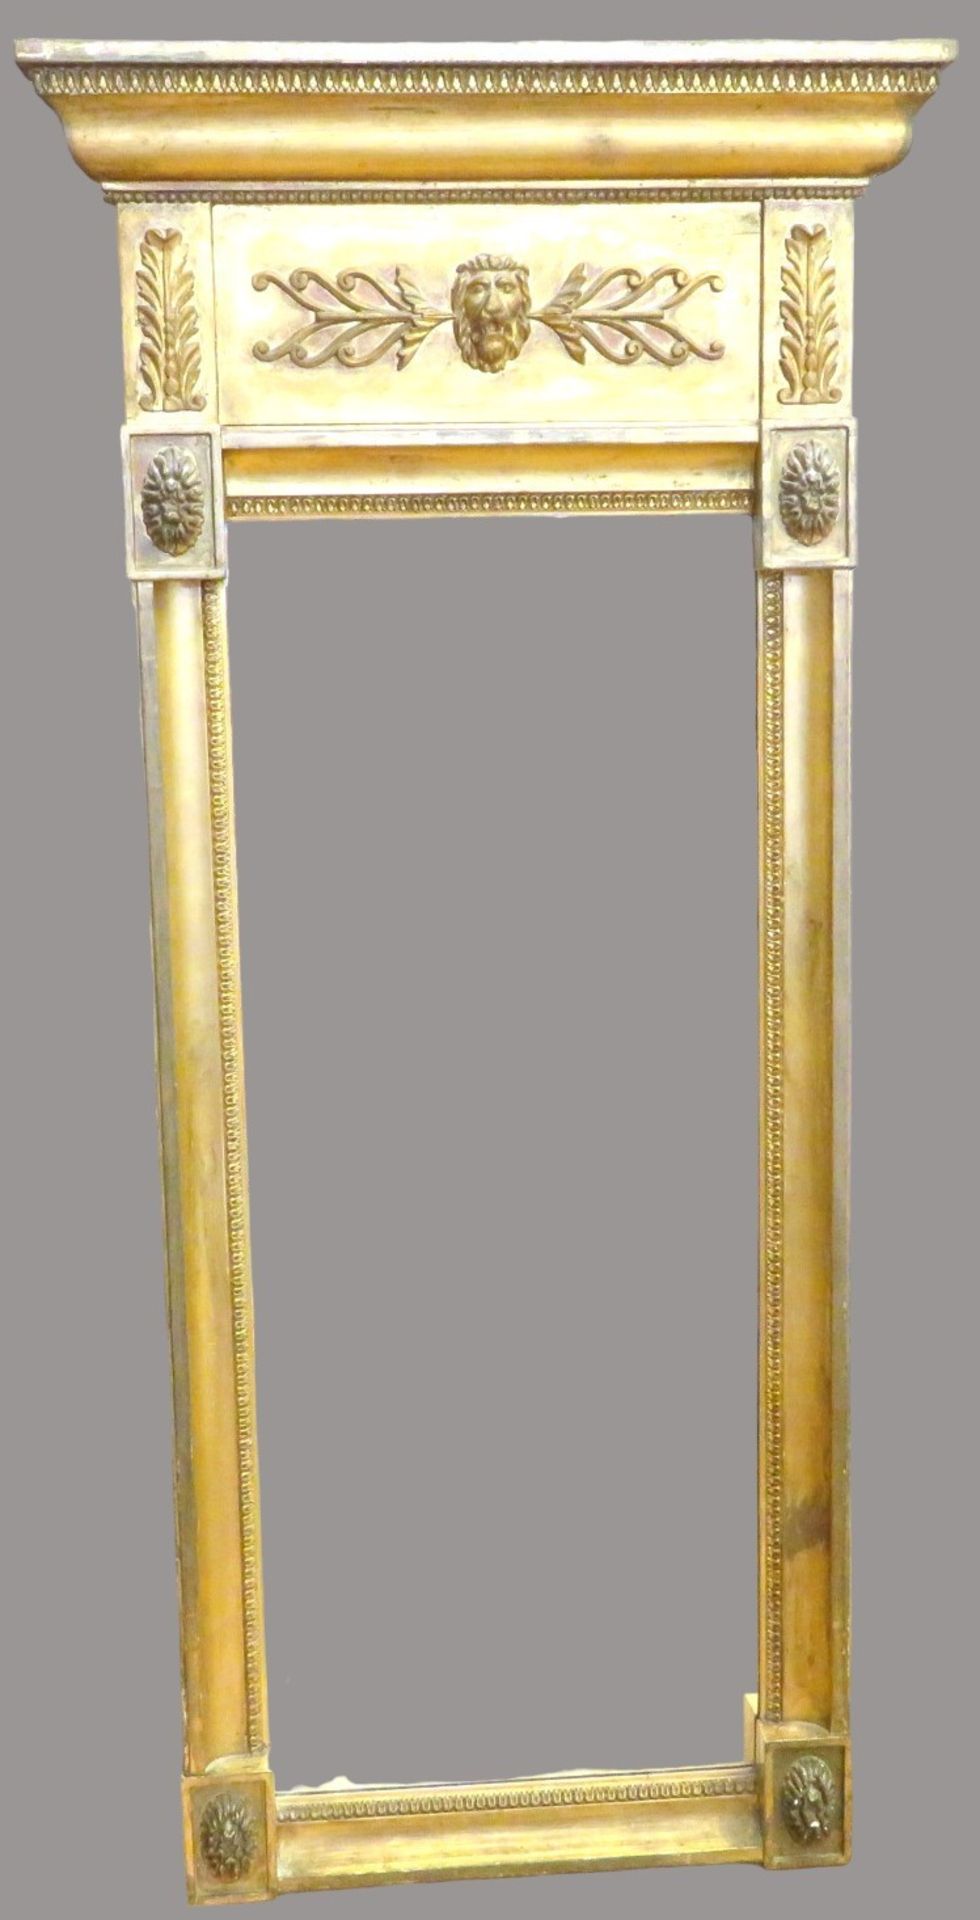 Spiegel, Empire, um 1800, Holz geschnitzt und vergoldet, 122 x 57 x 7,5 cm.